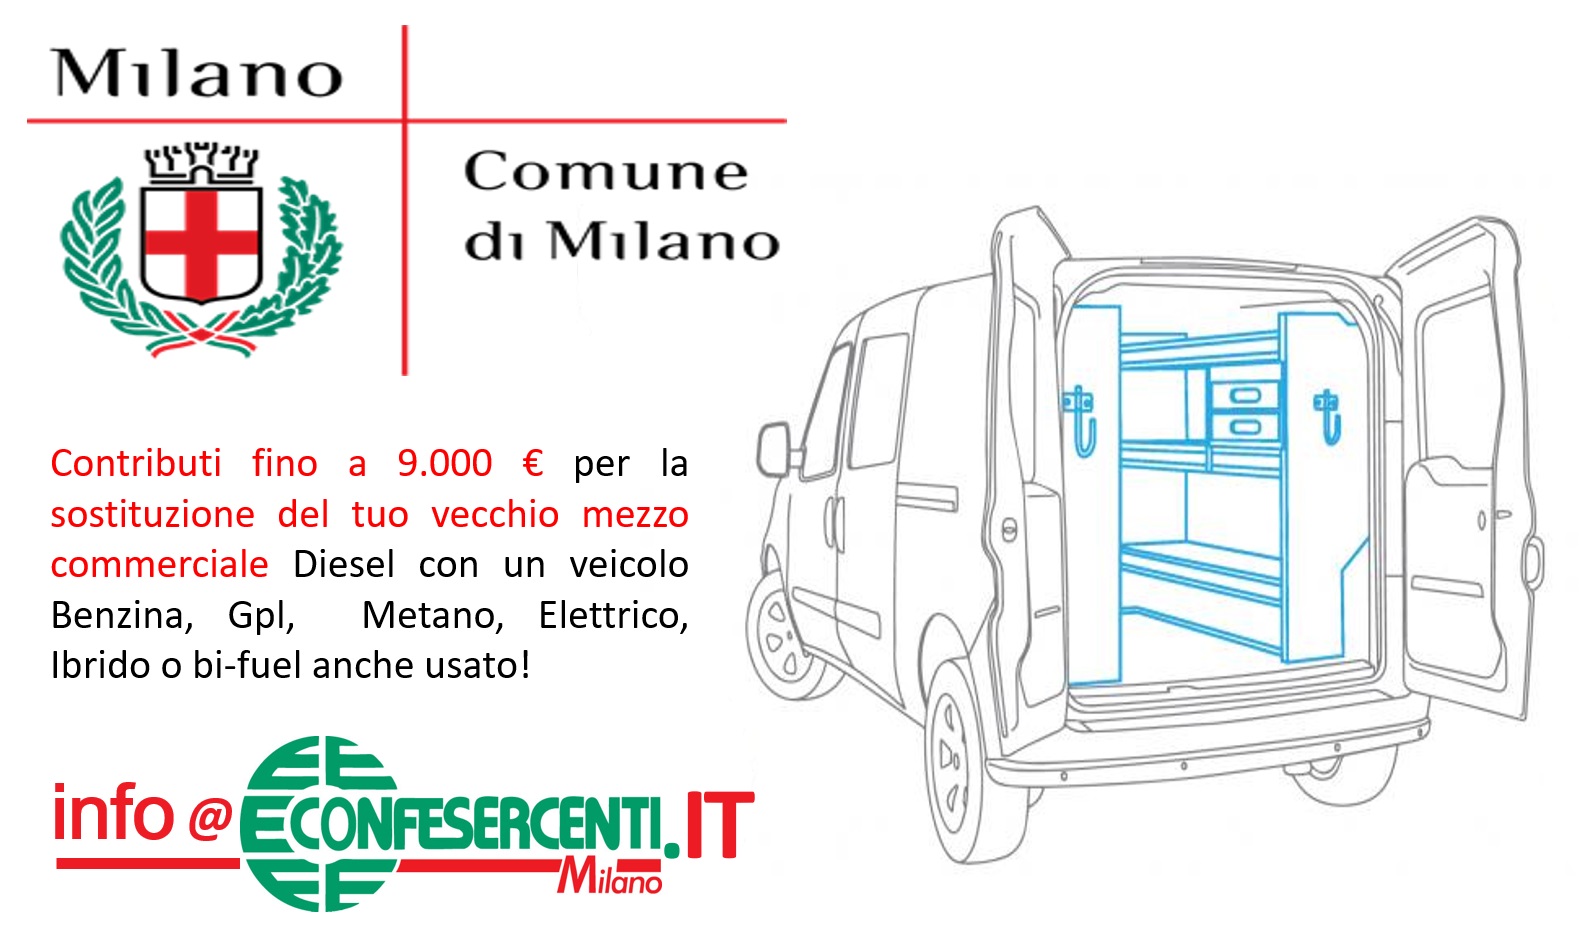 Veicoli commerciali, contributi fino a 9.000 € dal Comune di Milano per la sostituzione dei veicoli diesel, anche con mezzi usati 